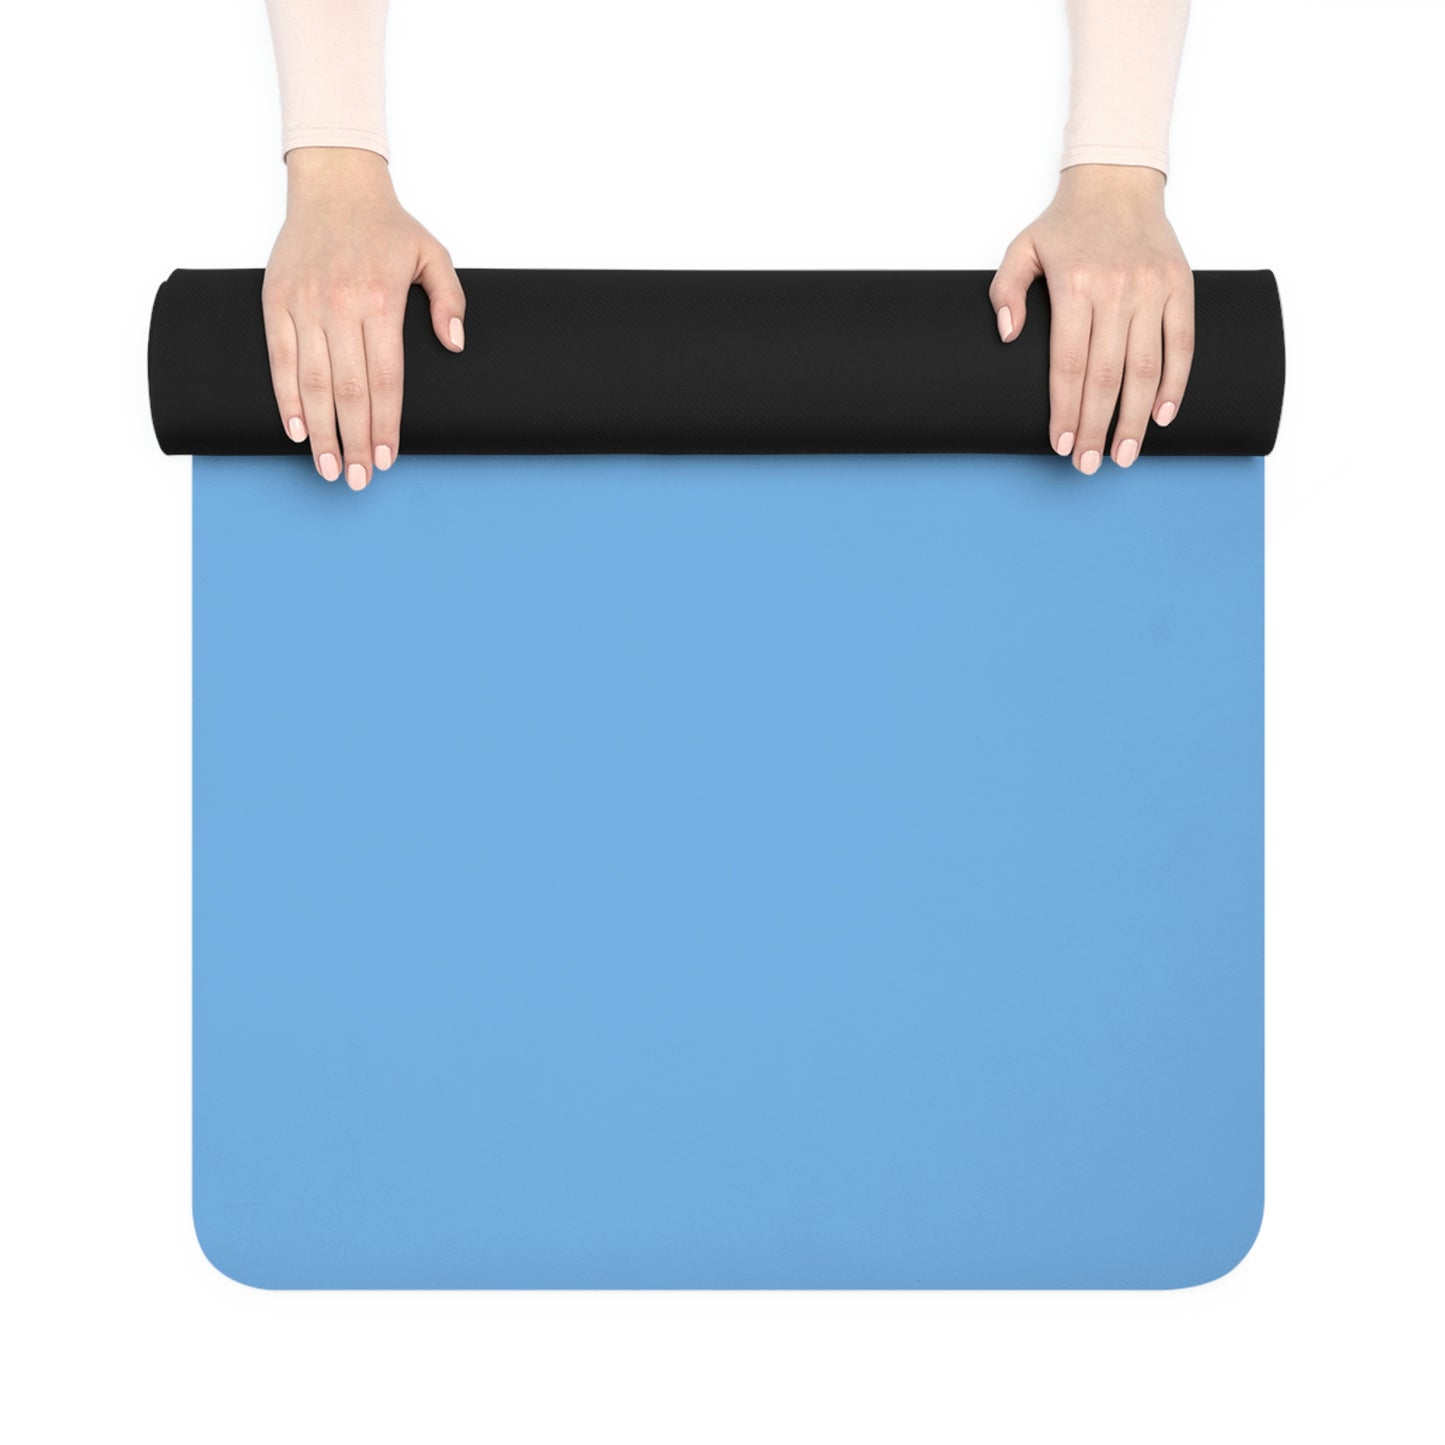 Copy of Copy of Rubber Yoga Mat